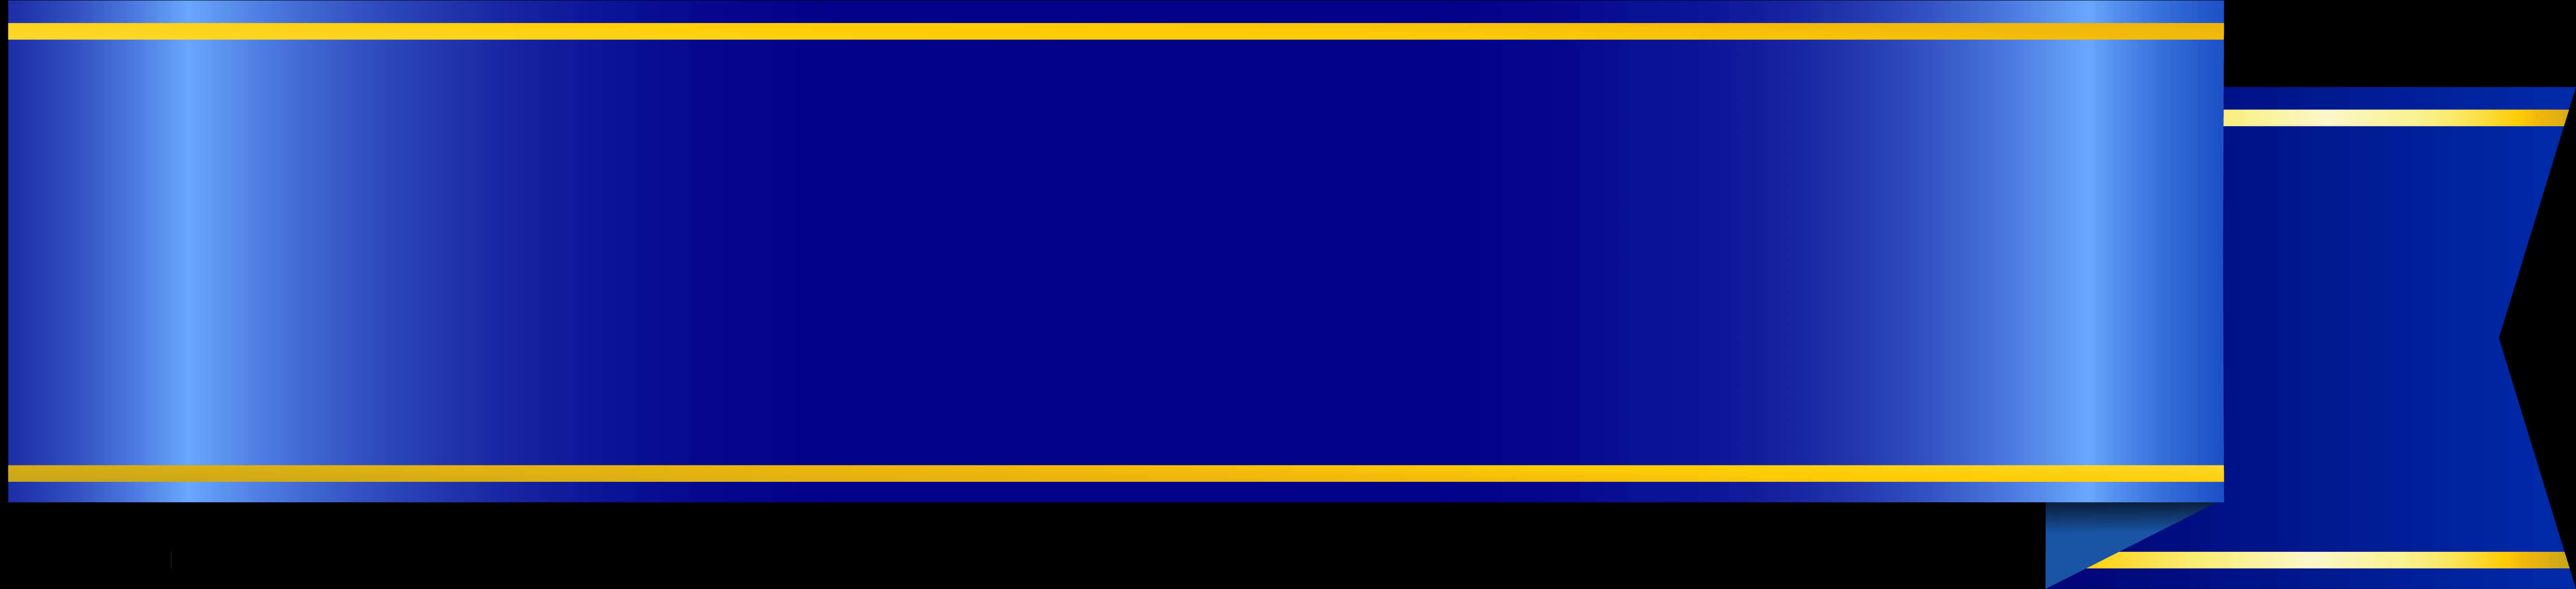 Blue Gold Banner Ribbon Design